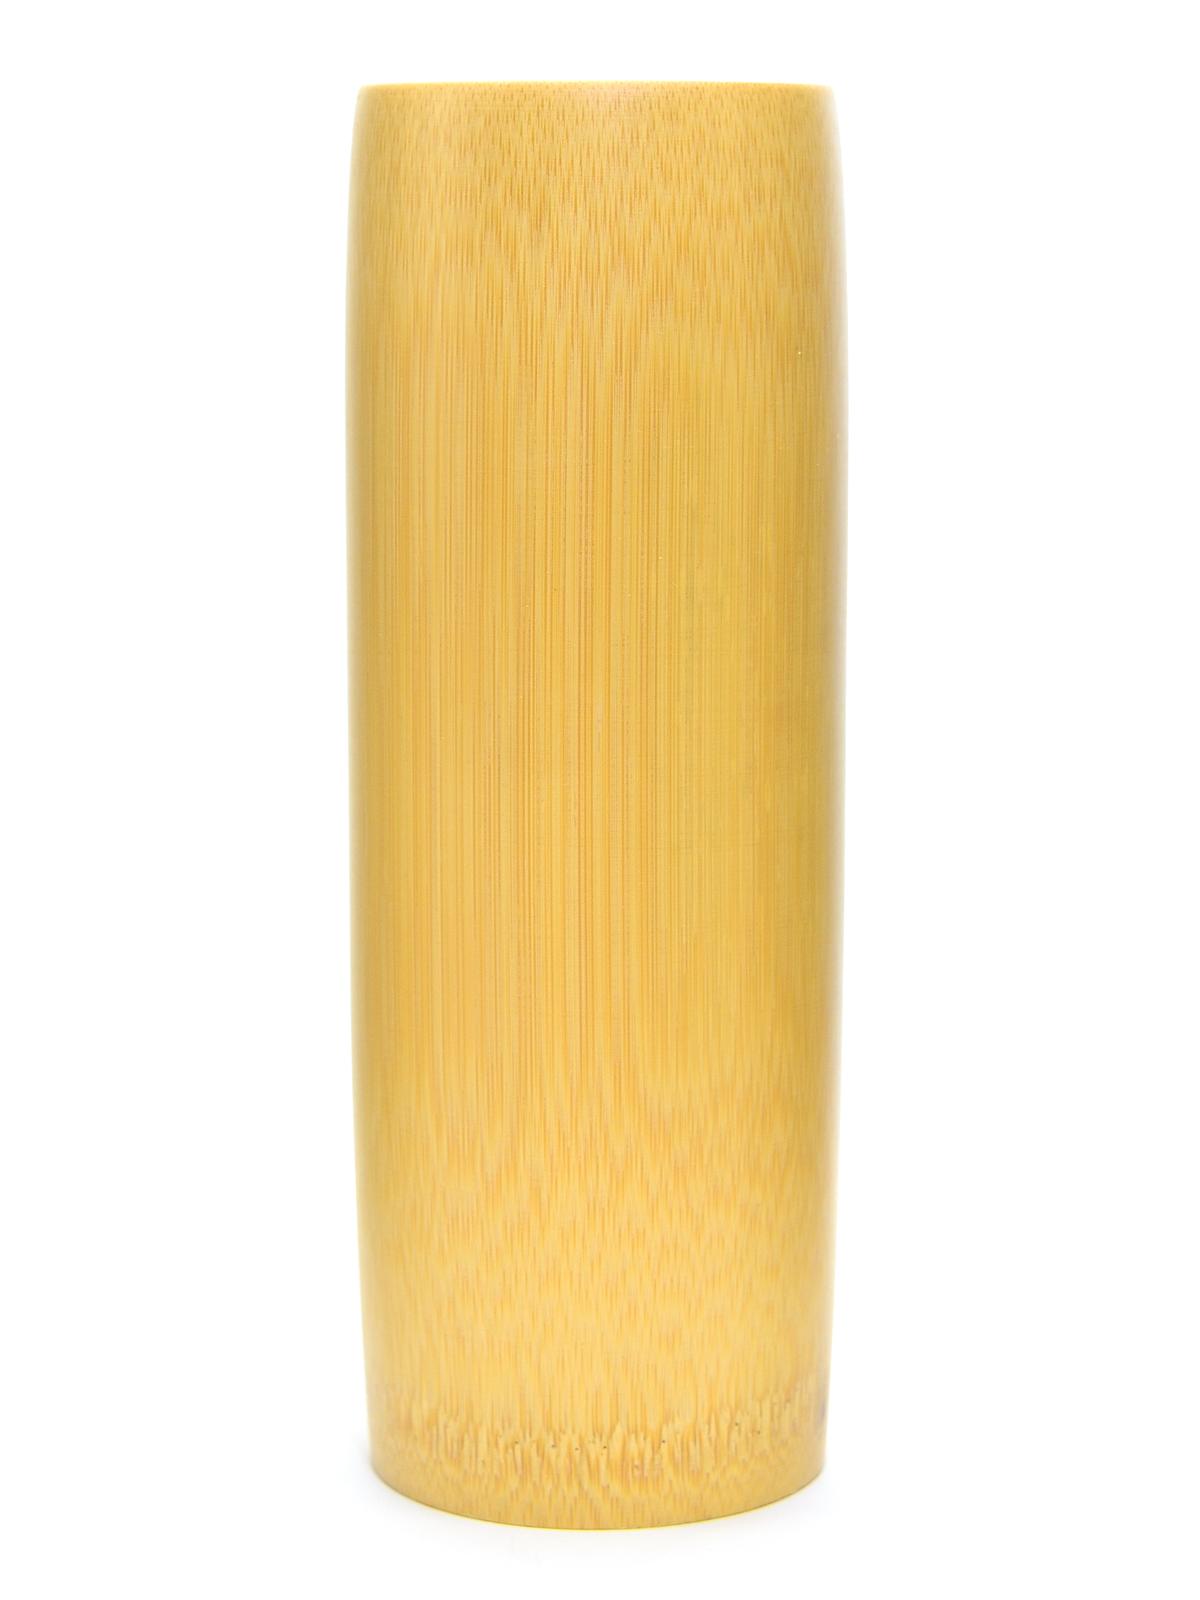 Bamboo Brush Holder Medium